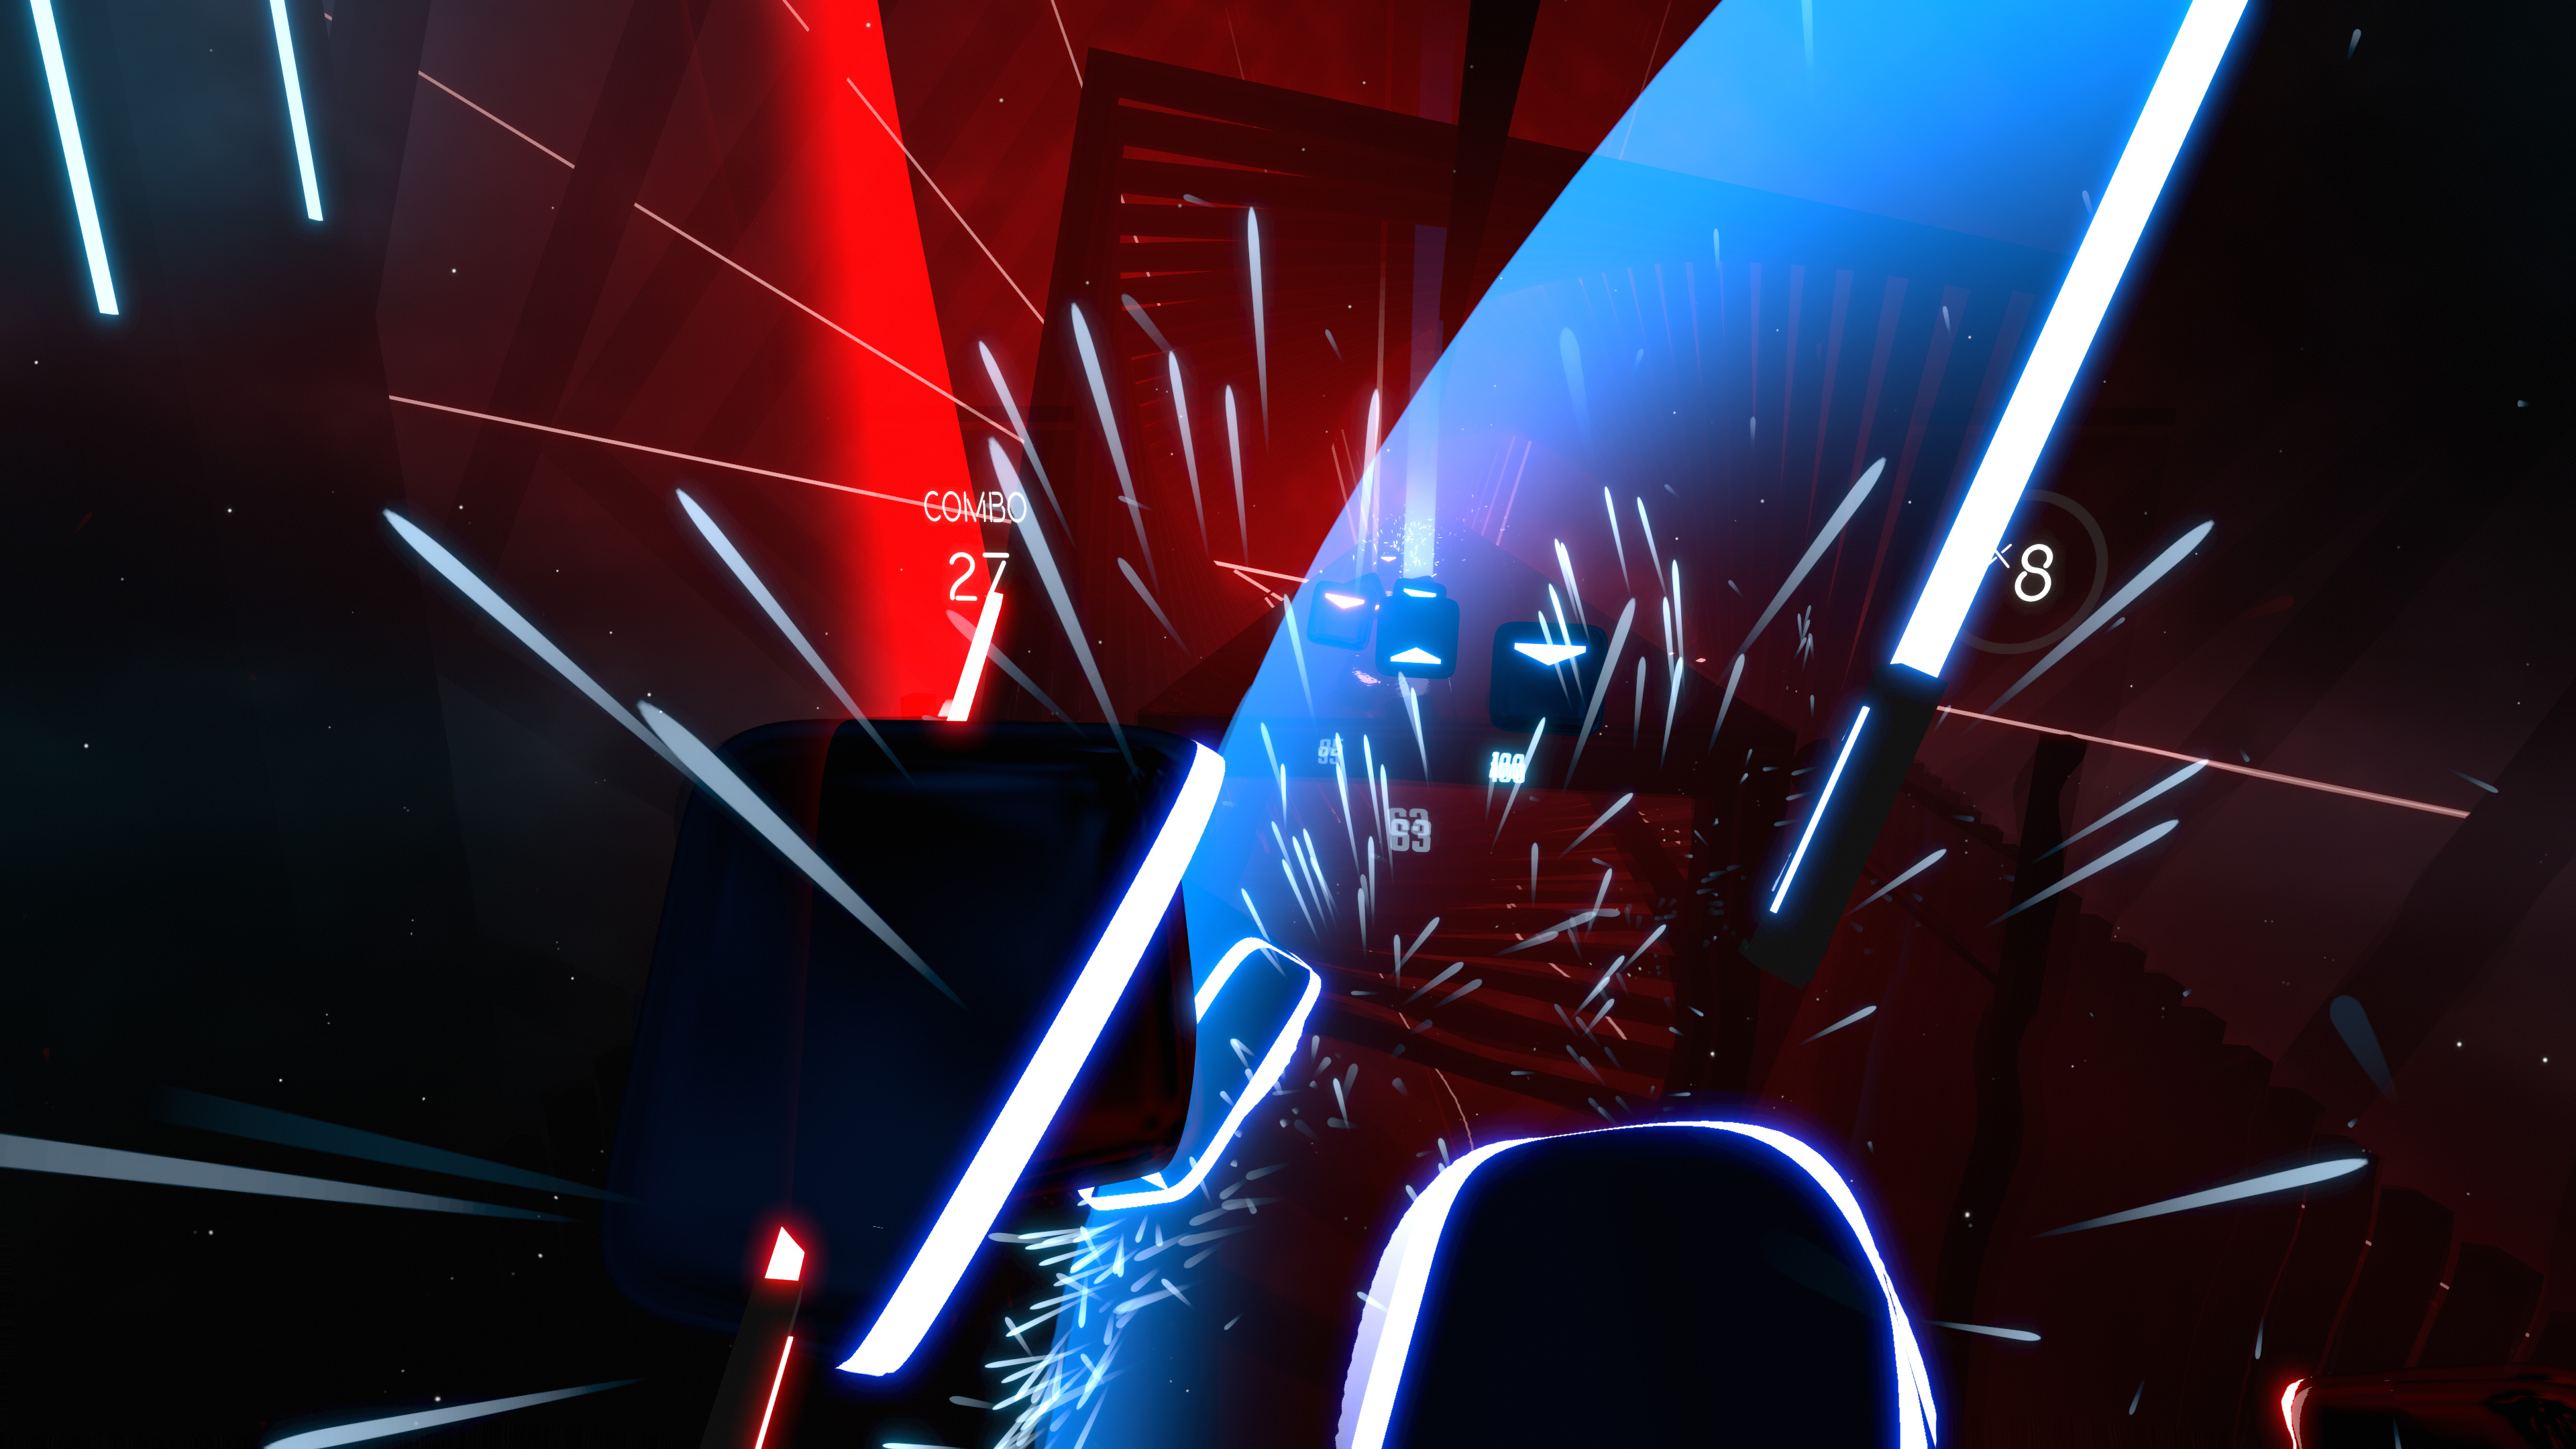 Beat Saber | Star Wars Lightsaber VR Videogame